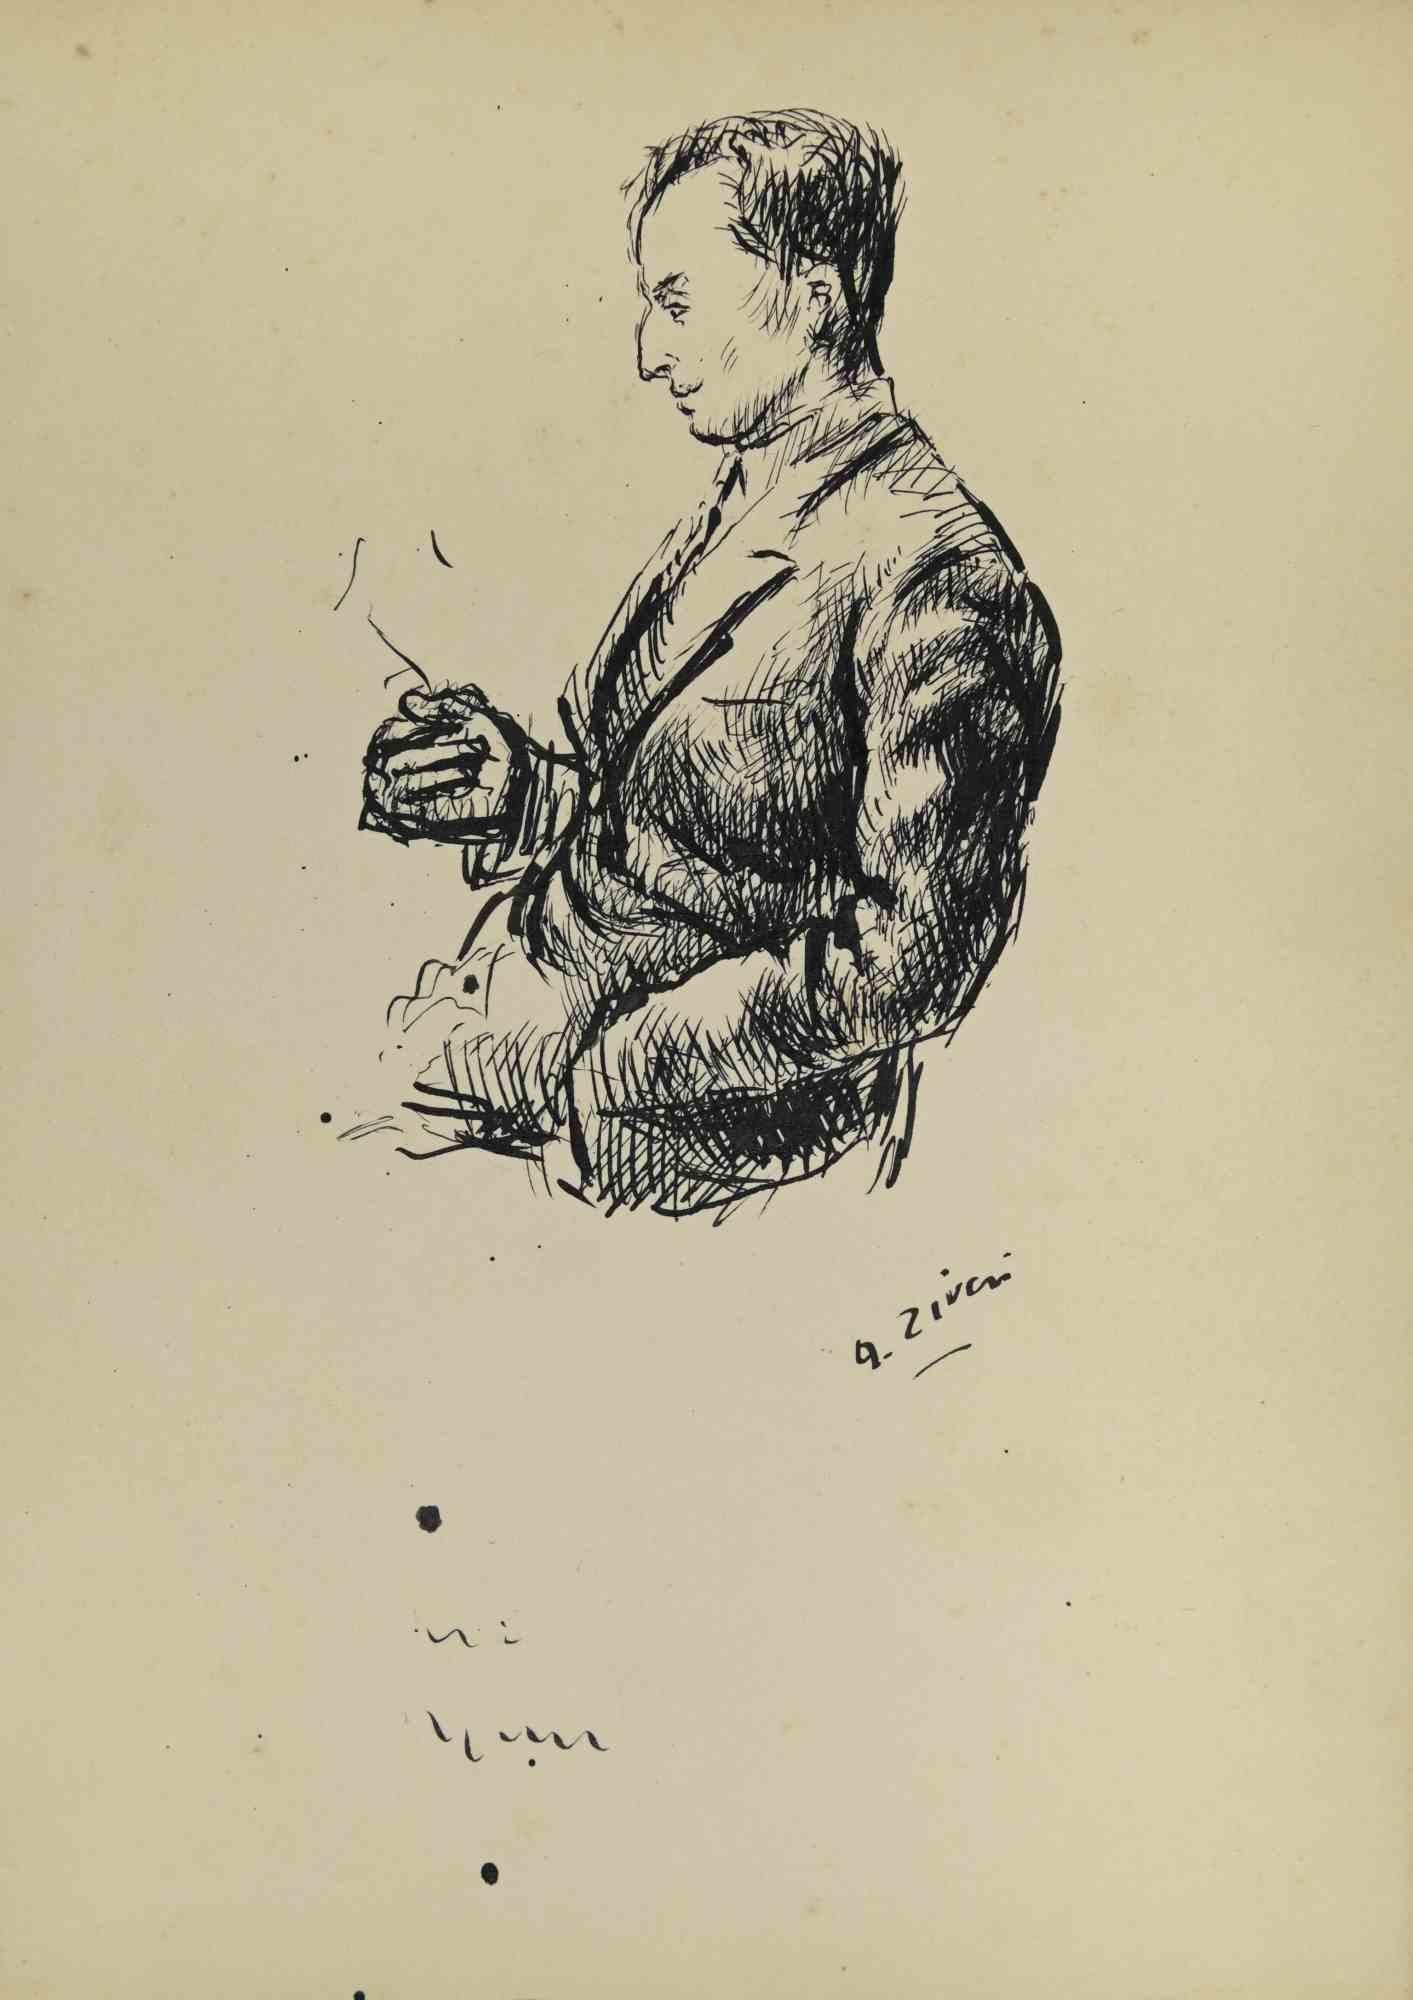 Der Mann ist eine Originalzeichnung von Alberto Ziveri aus den 1930er Jahren.

Tinte auf Papier.

Handsigniert.

In gutem Zustand mit leichten Stockflecken.

Das Kunstwerk wird durch geschickte Striche meisterhaft dargestellt.

Alberto Ziveri (Rom,